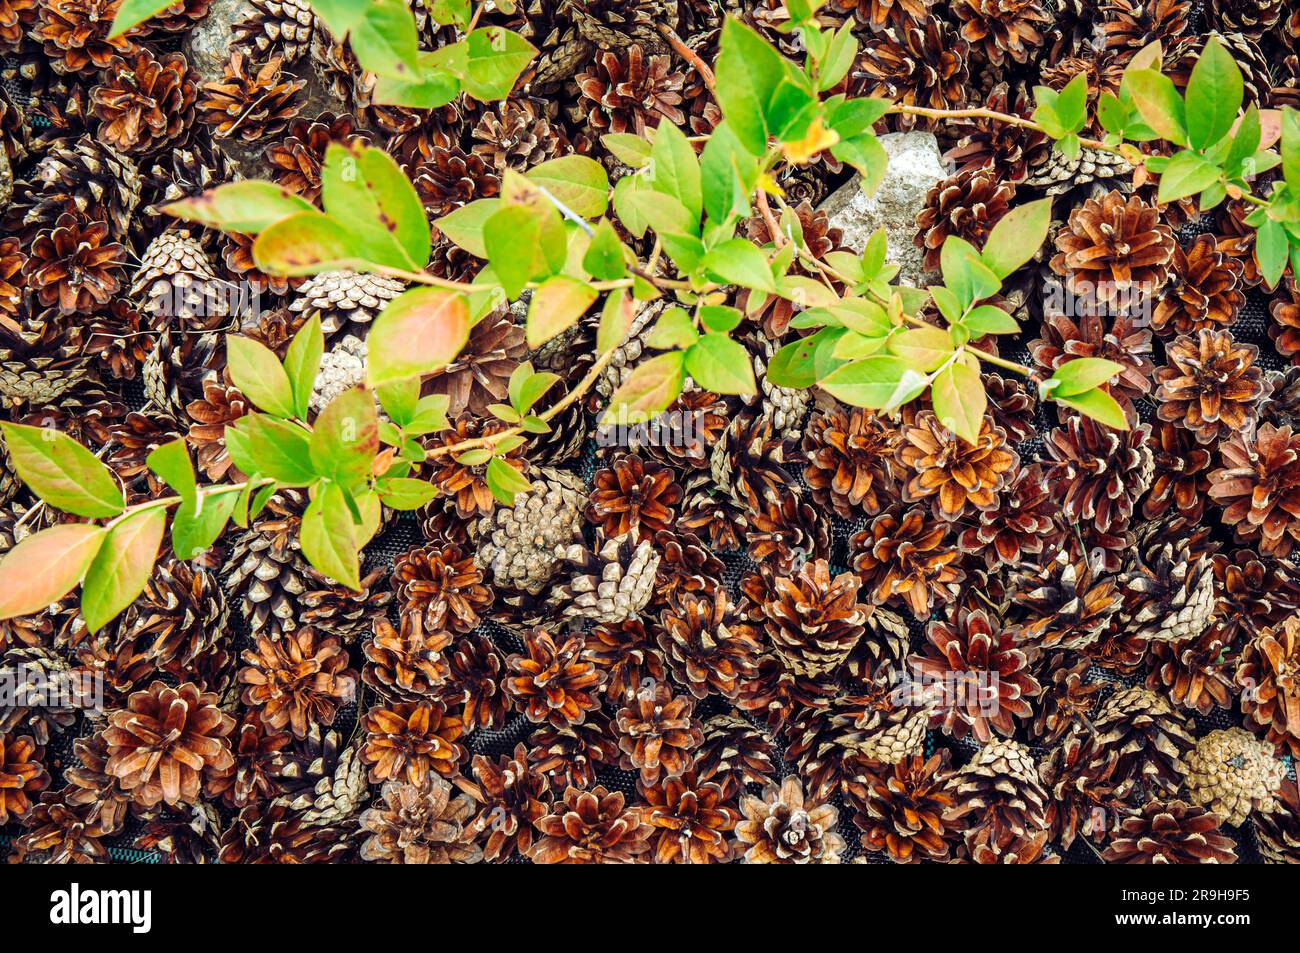 Blaubeerbusch ( Vaccinium corymbosum) im Hausgarten mit Kiefernmulch um ihn herum zur Verbesserung des ph-werts des Bodens. Stockfoto